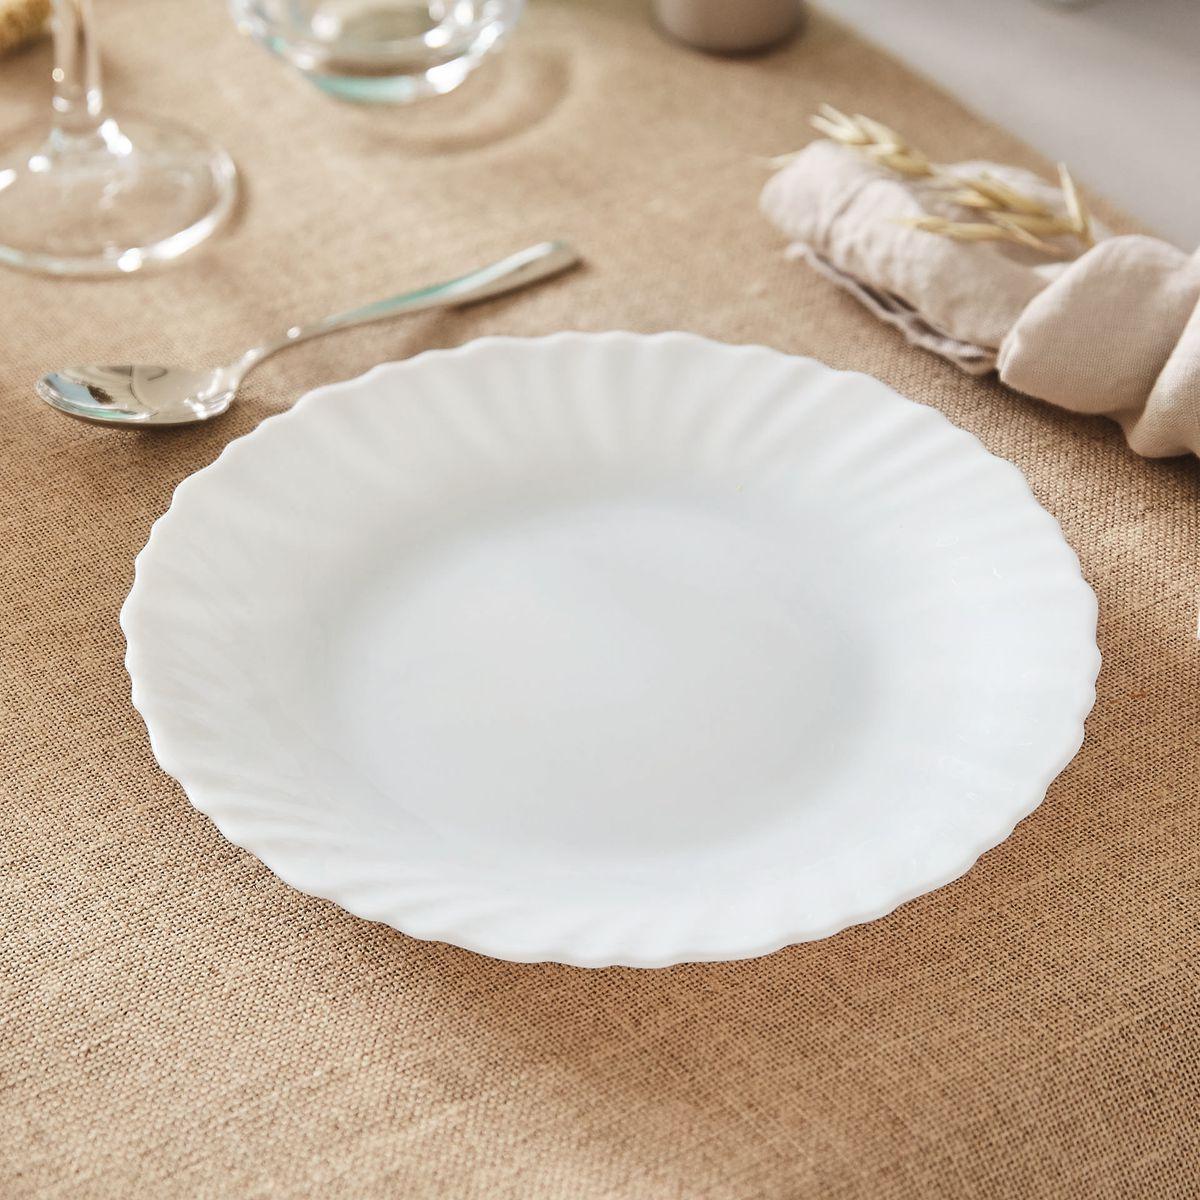 Assiette blanche 19 cm Feston - Luminarc